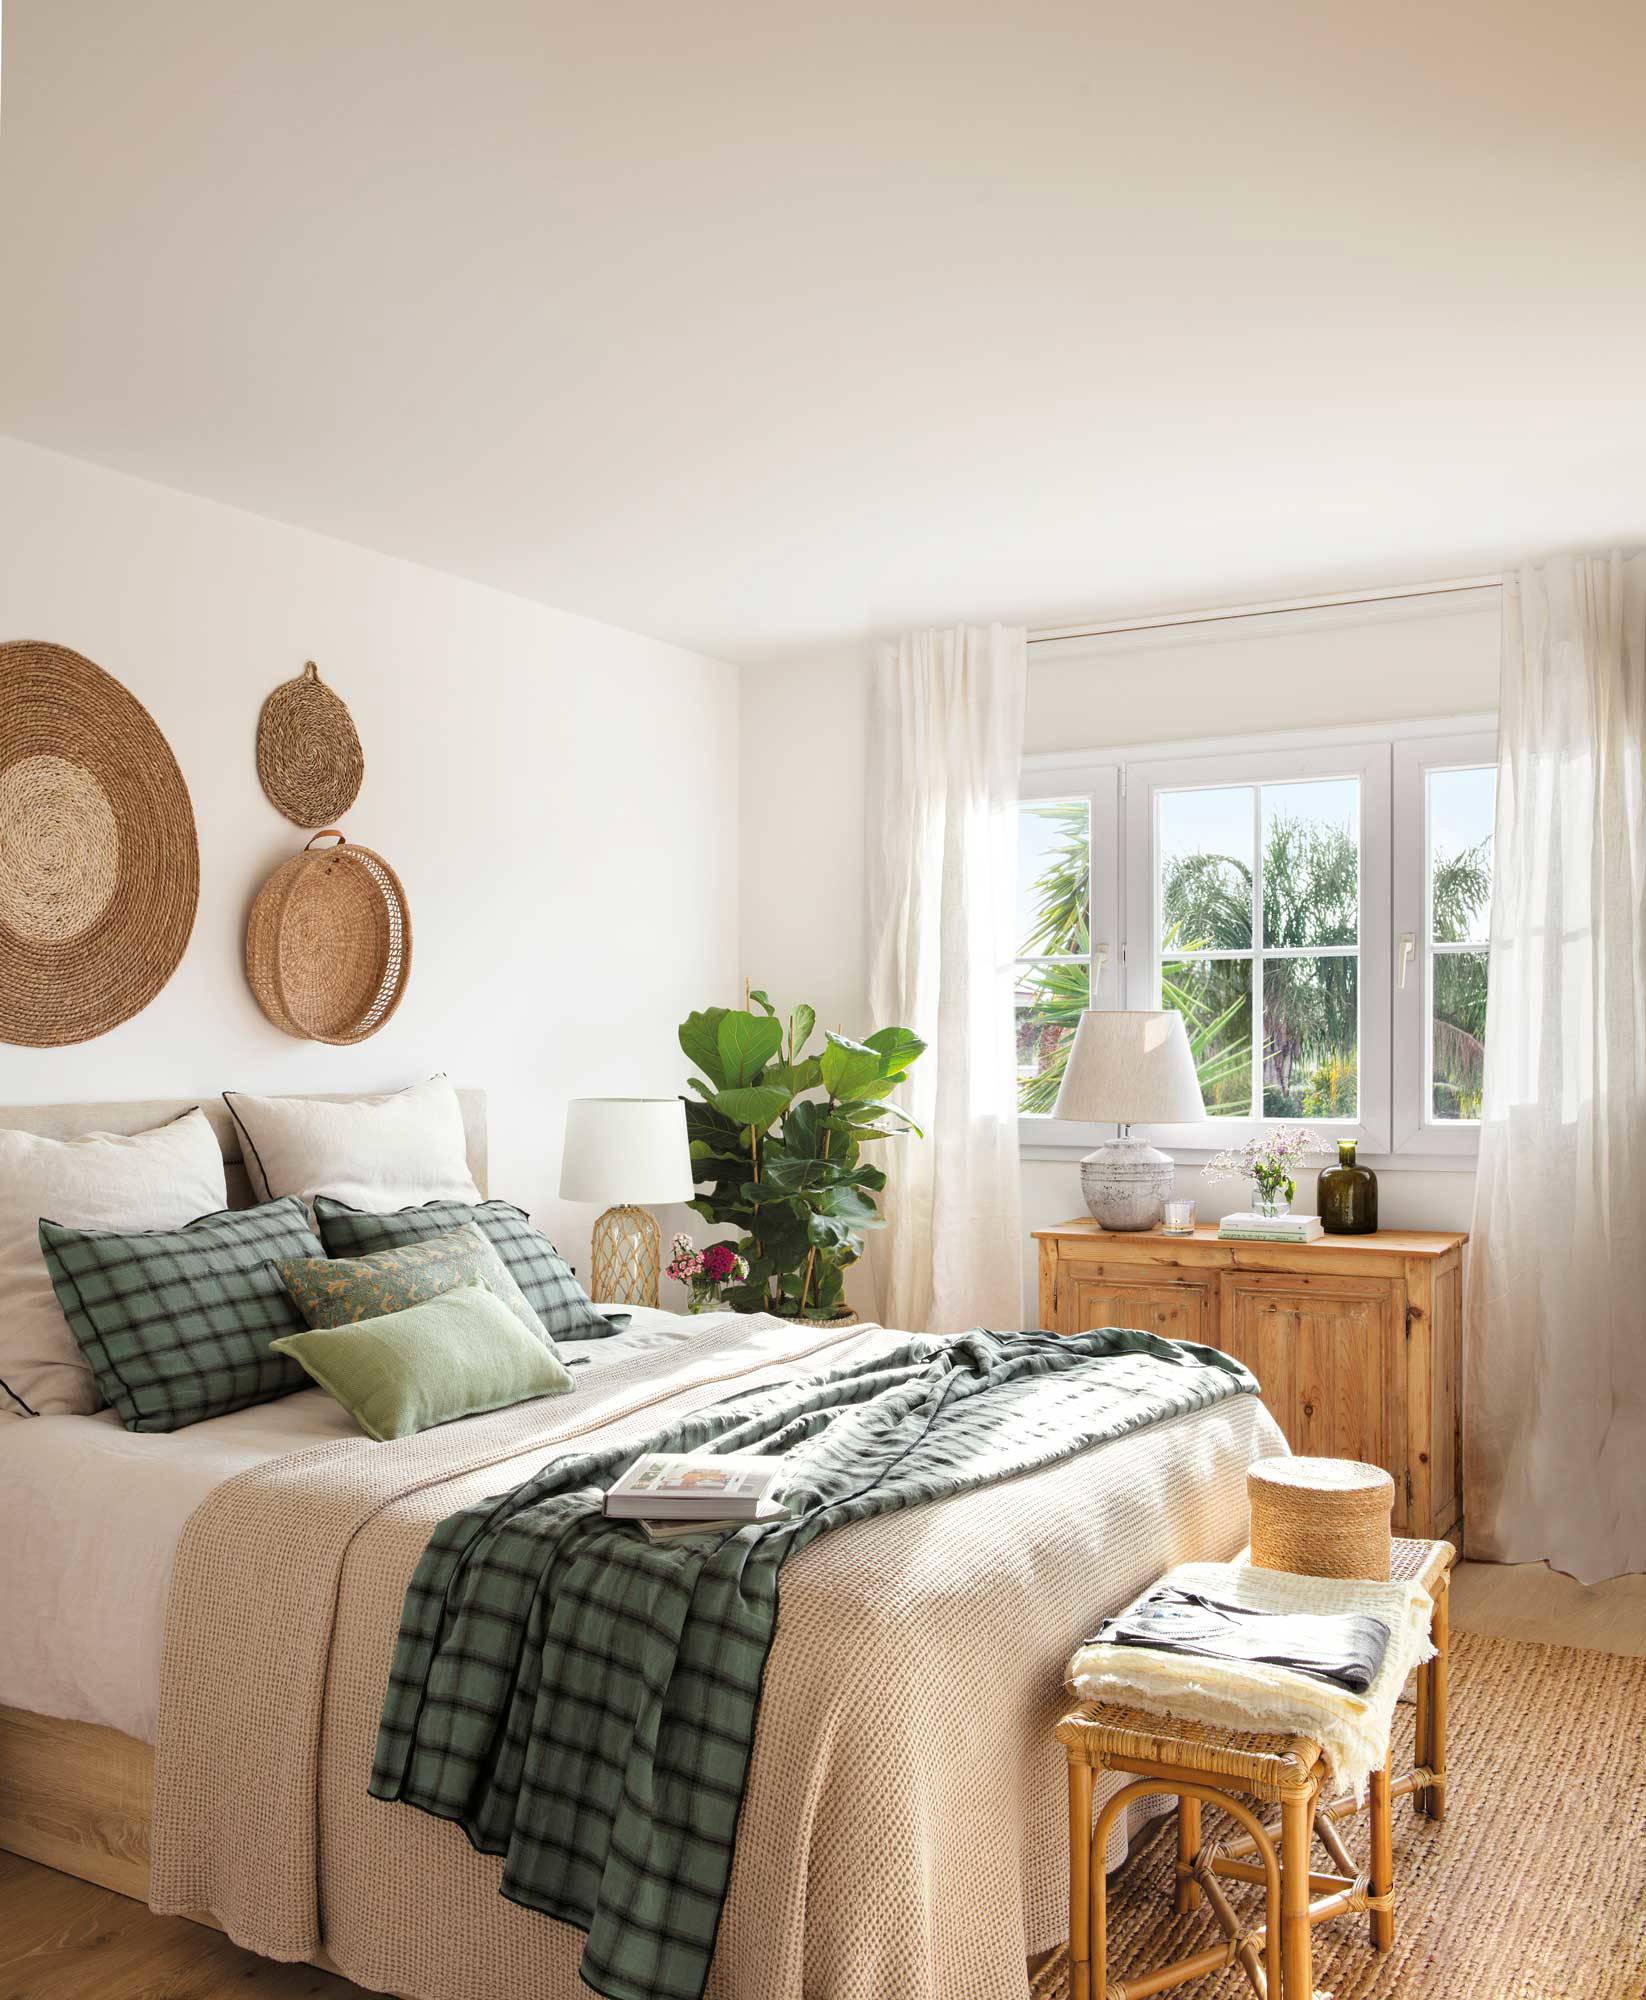 Dormitorio con pared decorada con individuales y cestos de fibra.